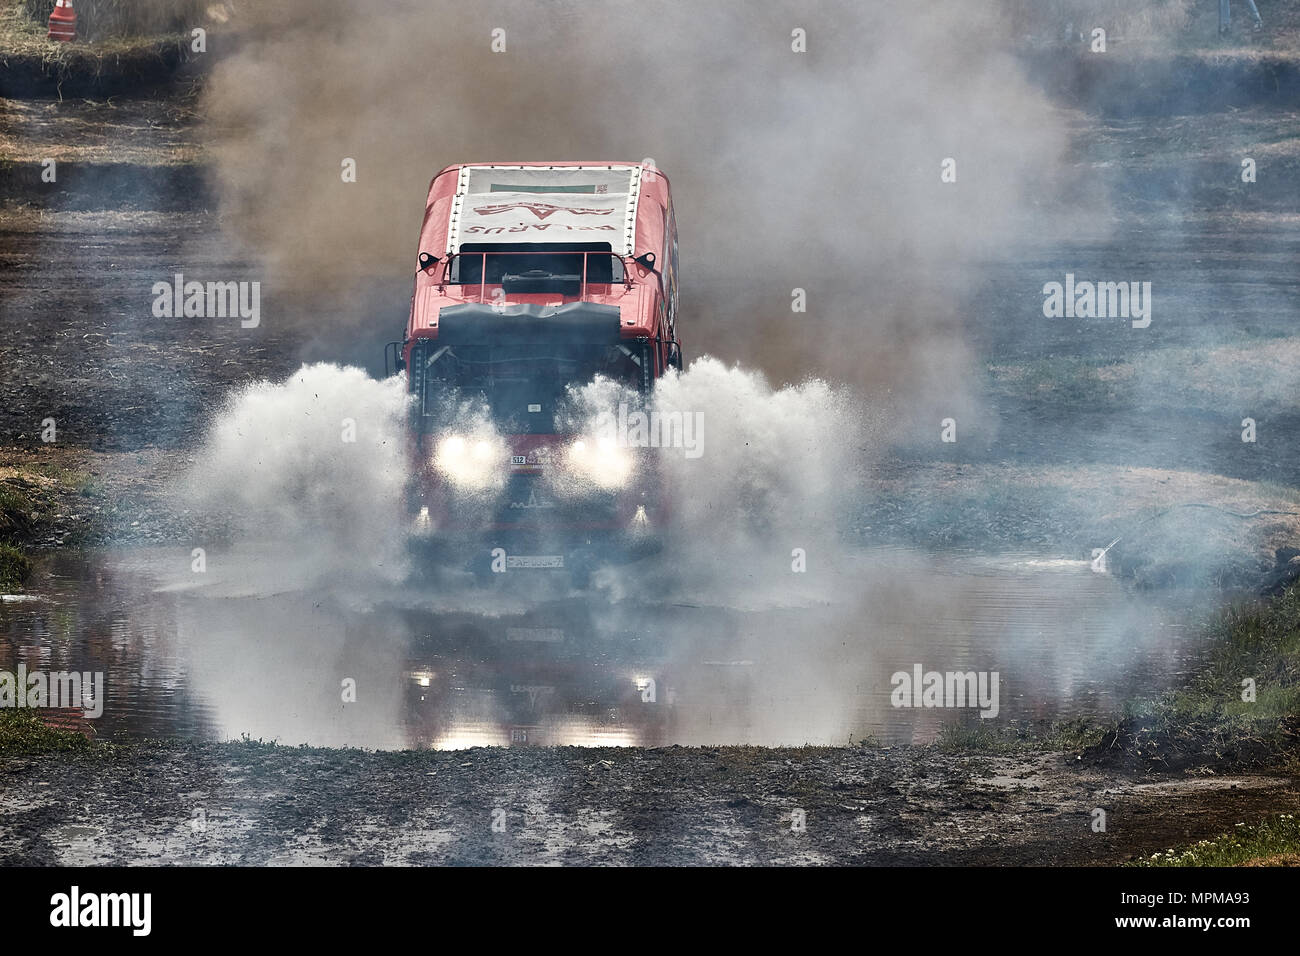 Truck MAZ of the MAZ-Sportauto racing team 20.05.2018, Rostov Region, Russia Stock Photo